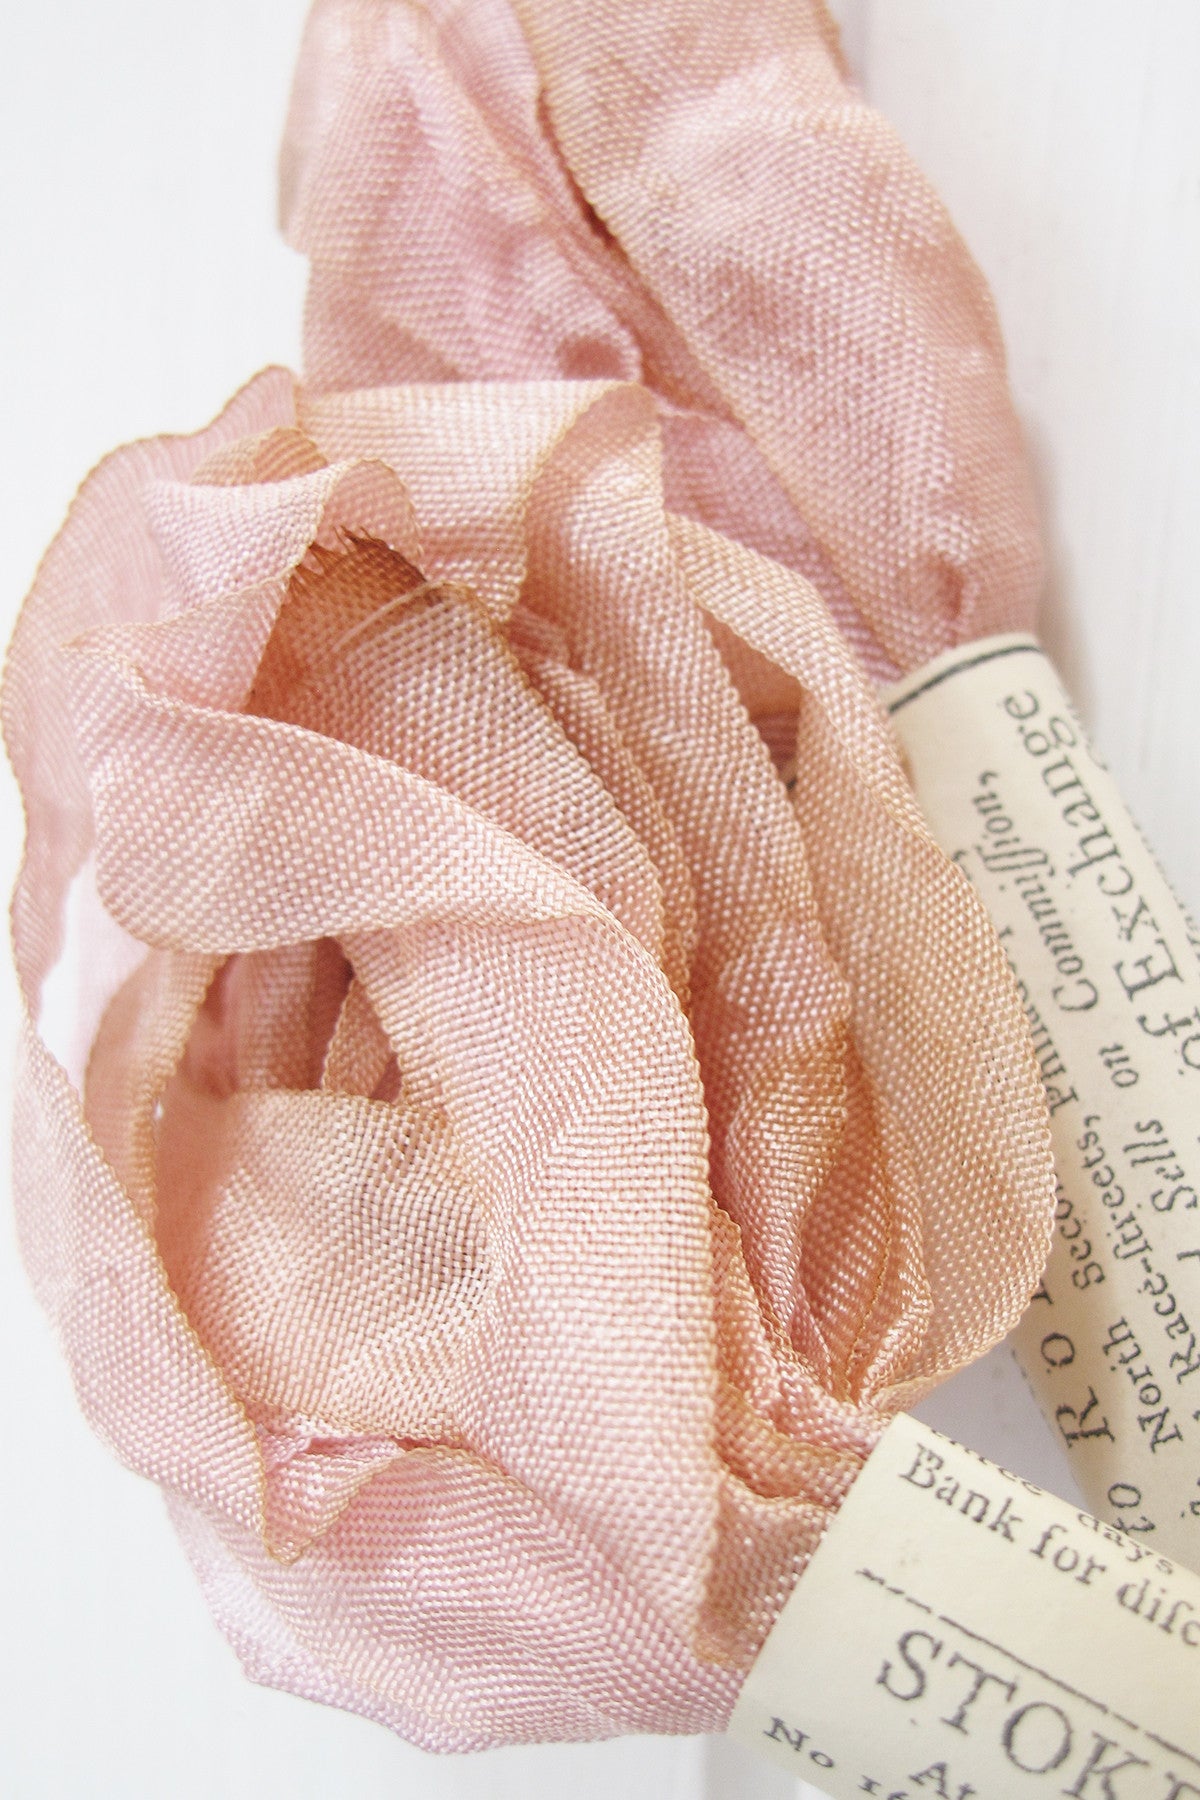 Silk Ribbon in Marie Antoinette Pink